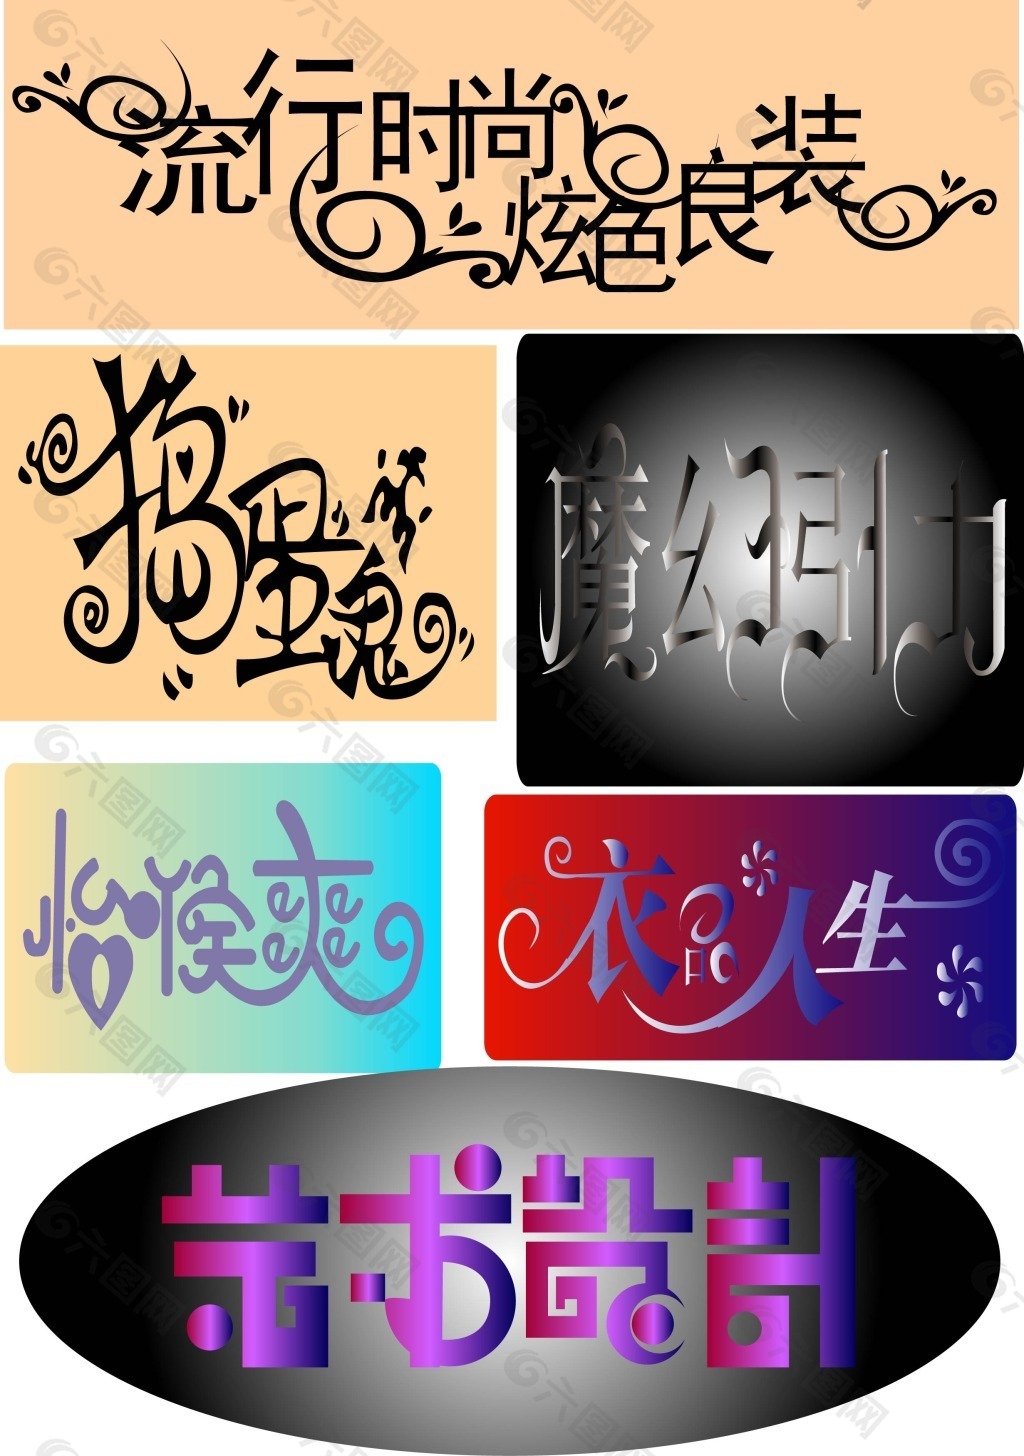 原创艺术字体素材-原创艺术字体模板-原创艺术字体图片免费下载-设图网